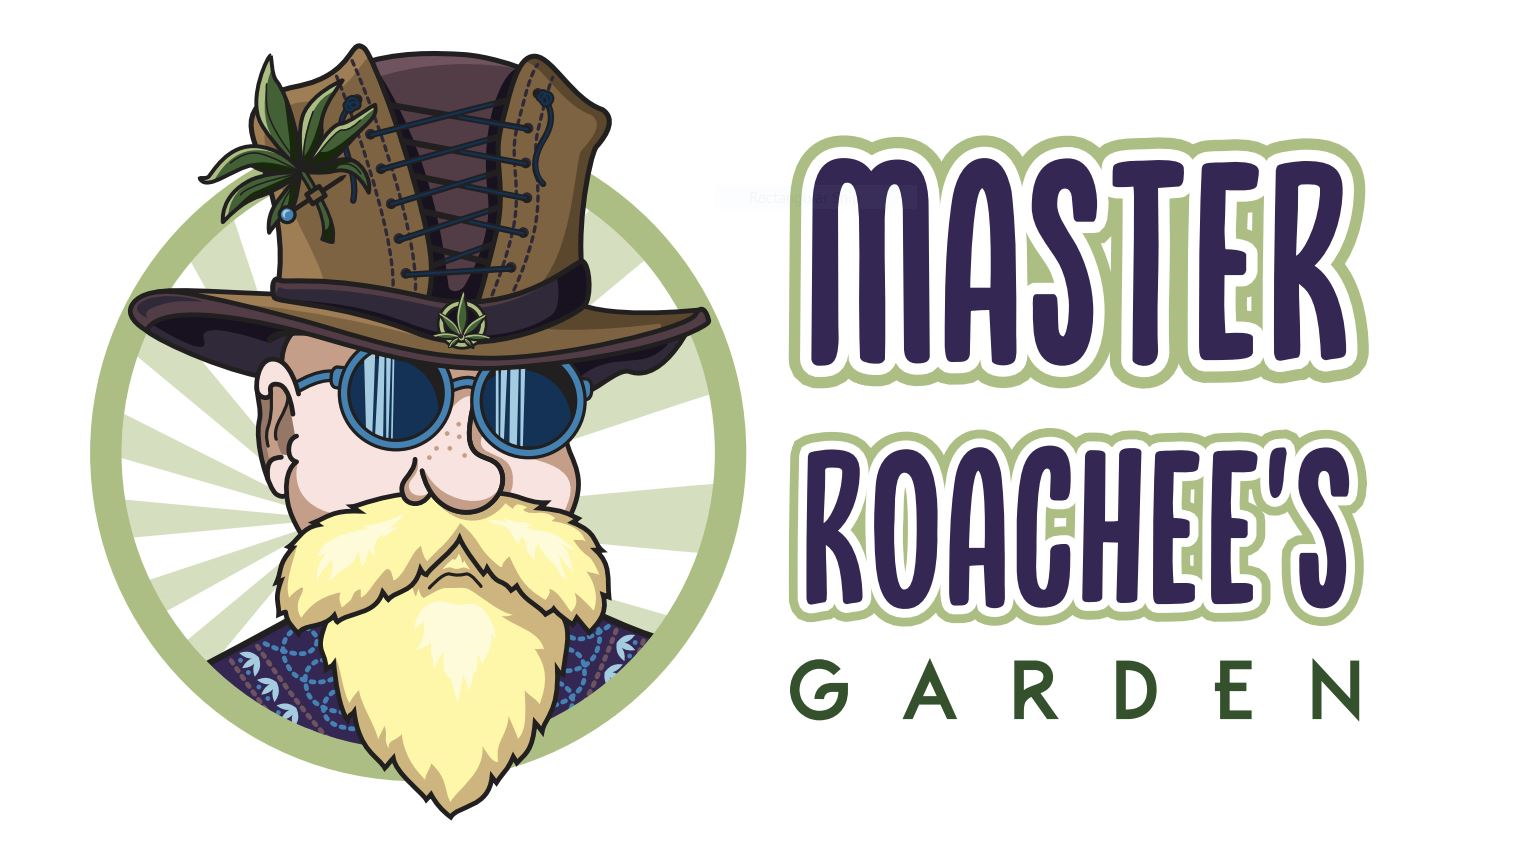 Master Roachee's Garden Website